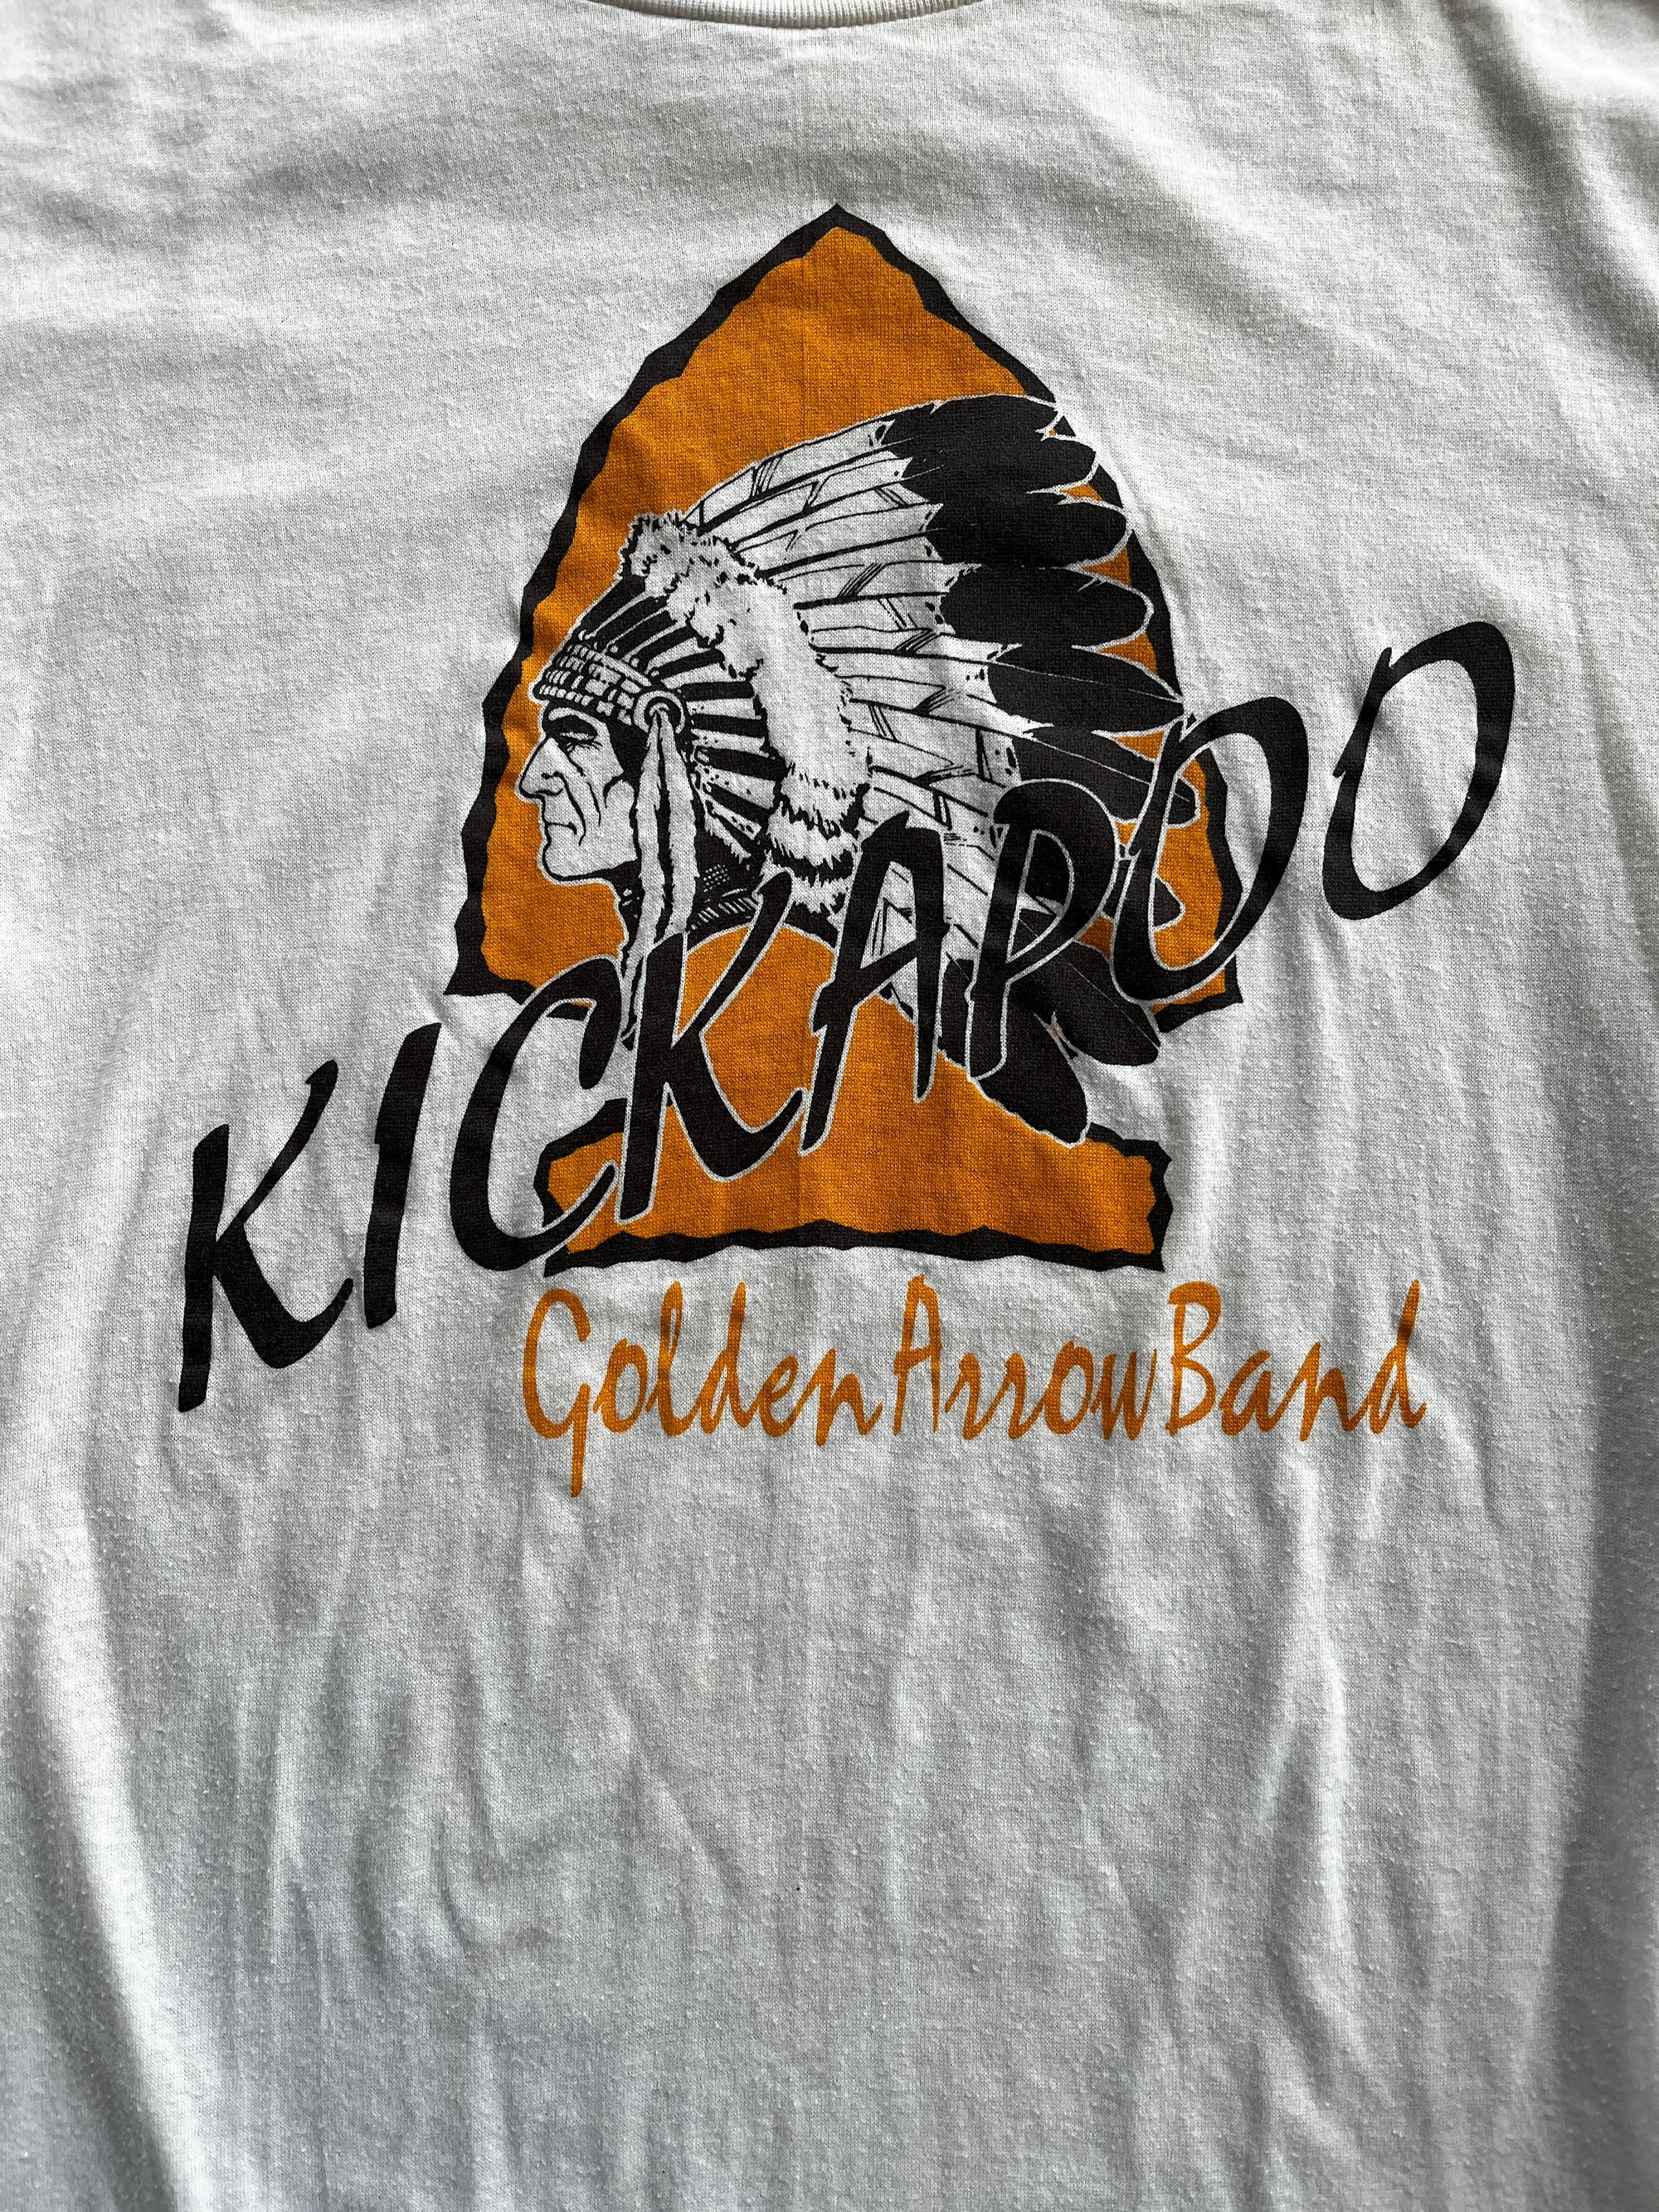 Kickaroo Band Tee